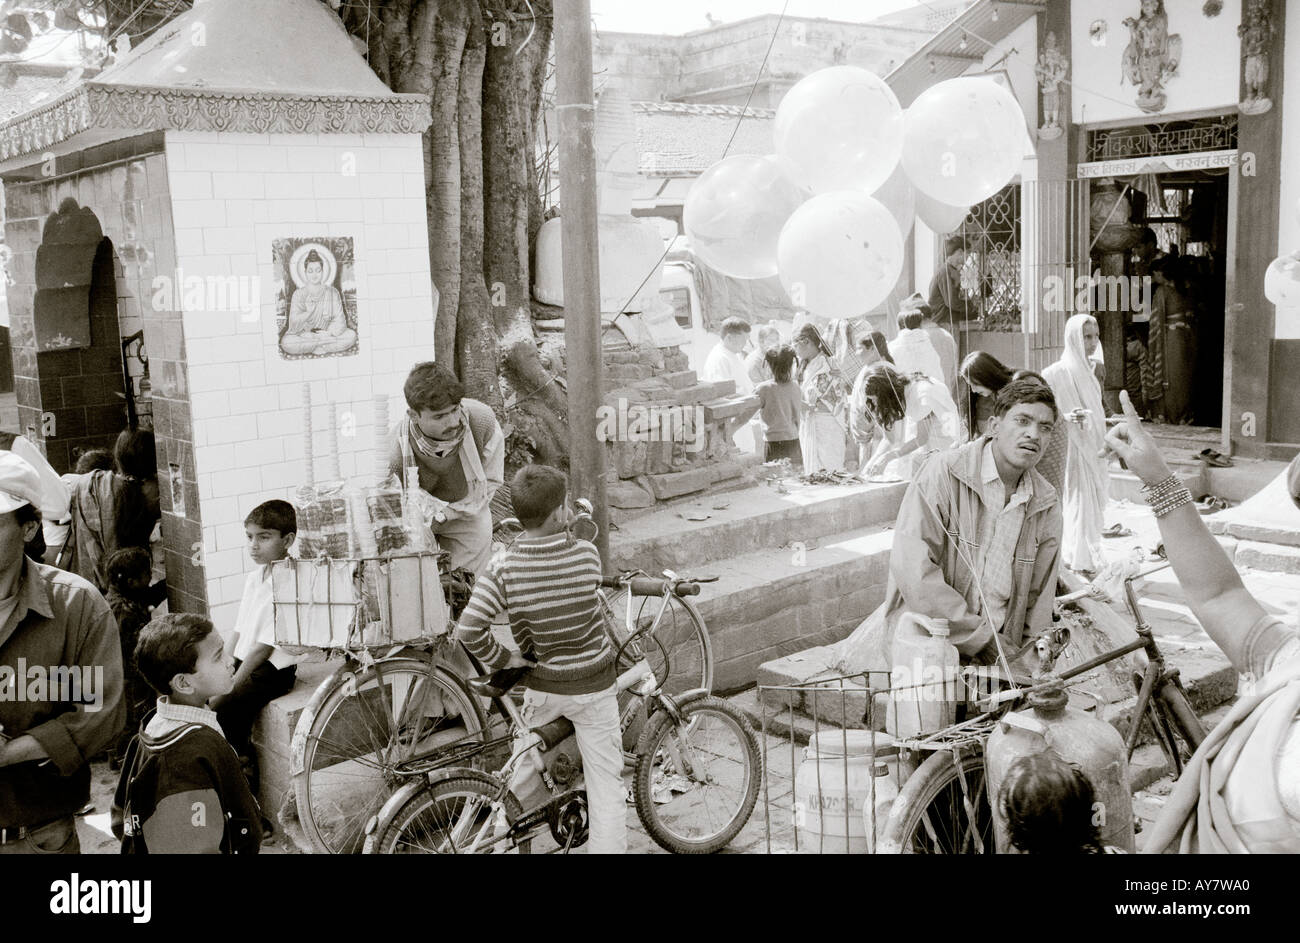 Welt zu reisen. Straßenbild und Leben in Kathmandu in Nepal in Asien. Reportage-Wanderlust-Eskapismus-Kultur-Geschichte Stockfoto